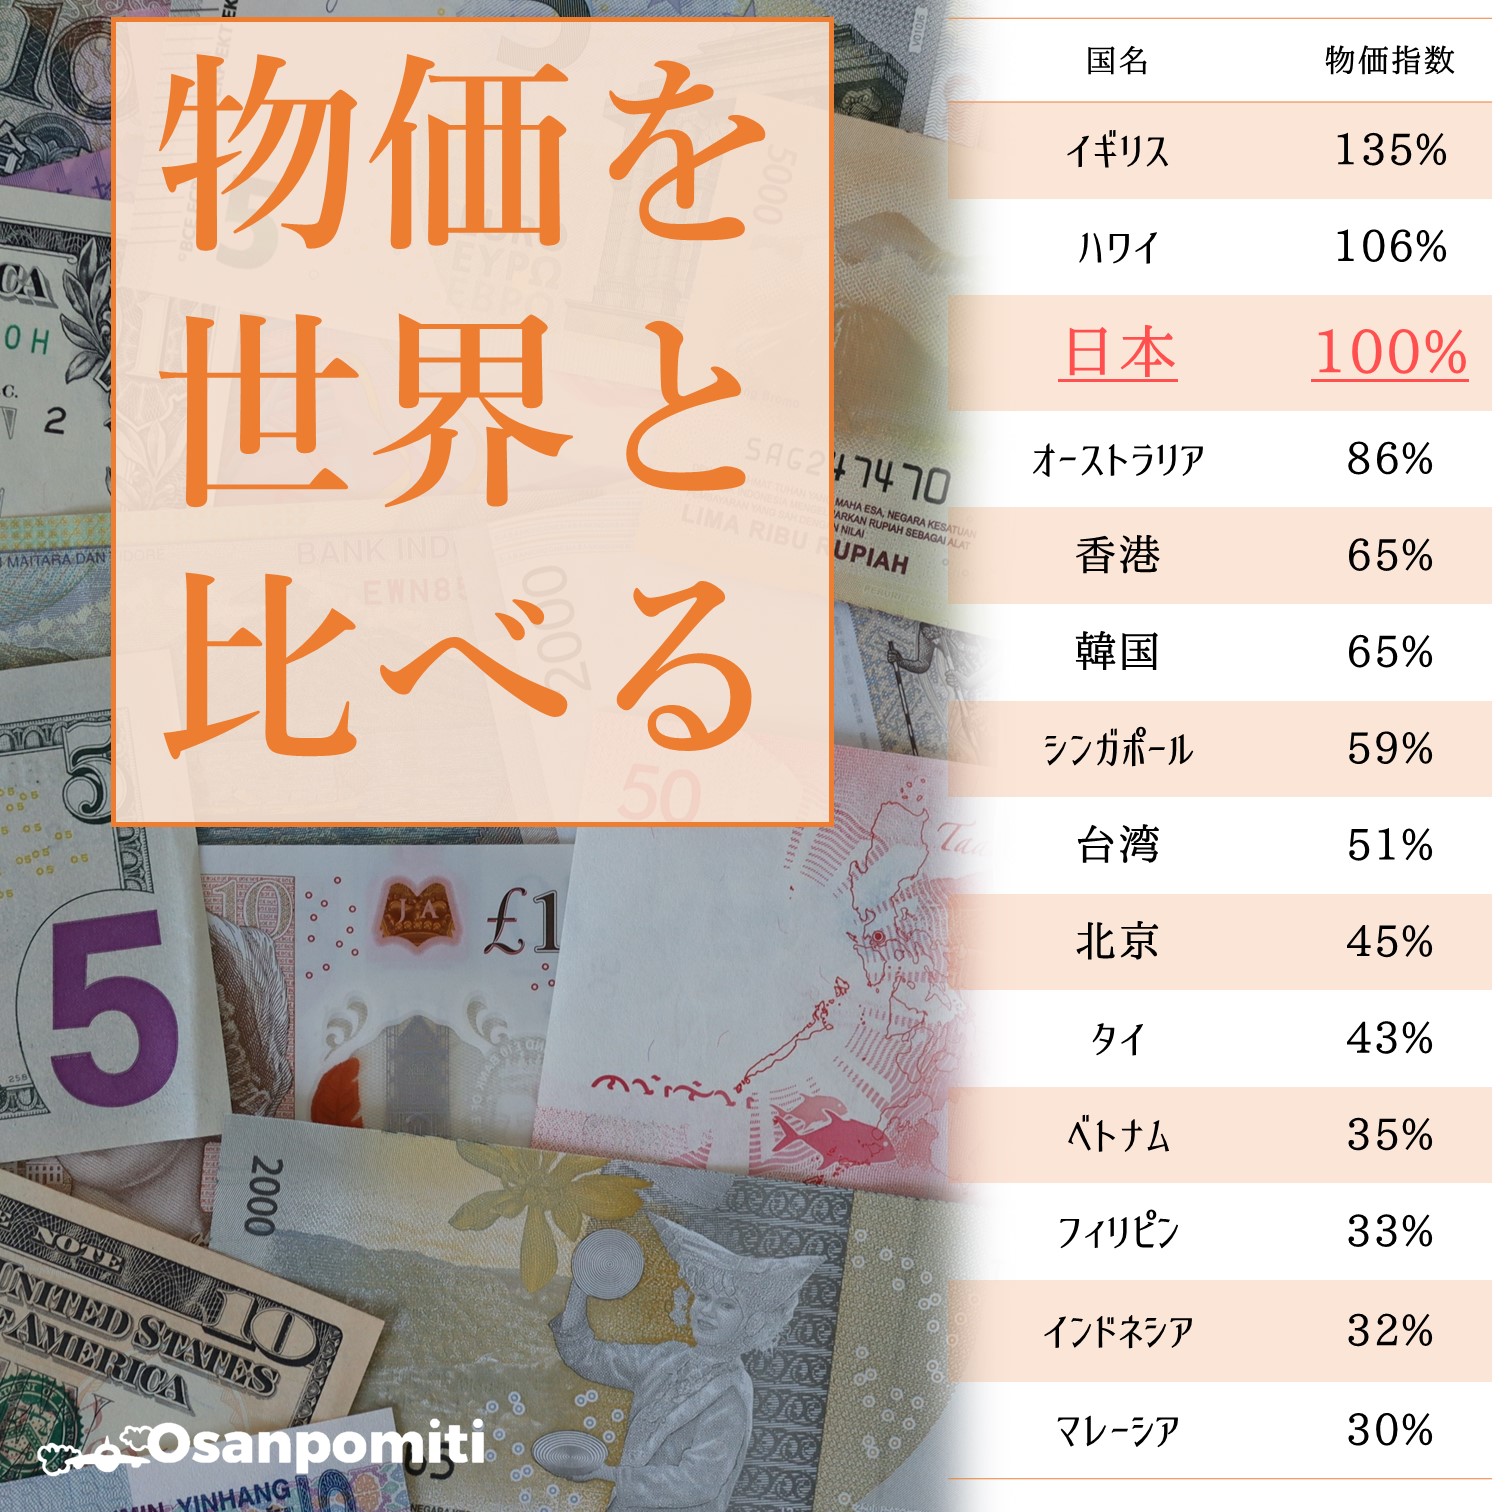 日本の物価を世界と比較